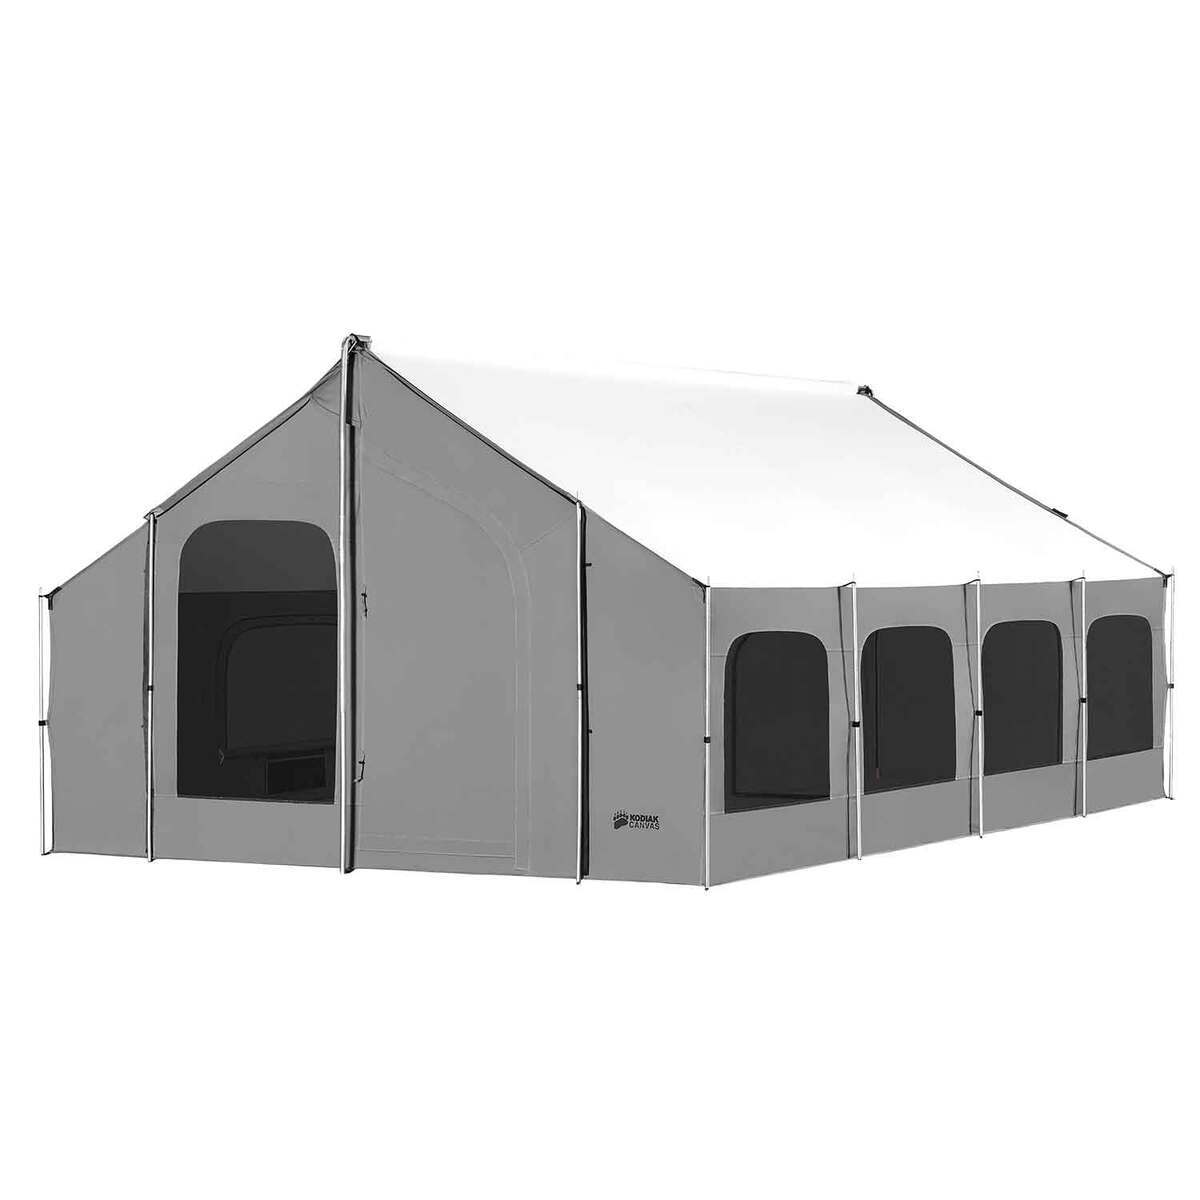 Kodiak Canvas Tent 6116 12x16 Cabin 10 Person Stove Ready